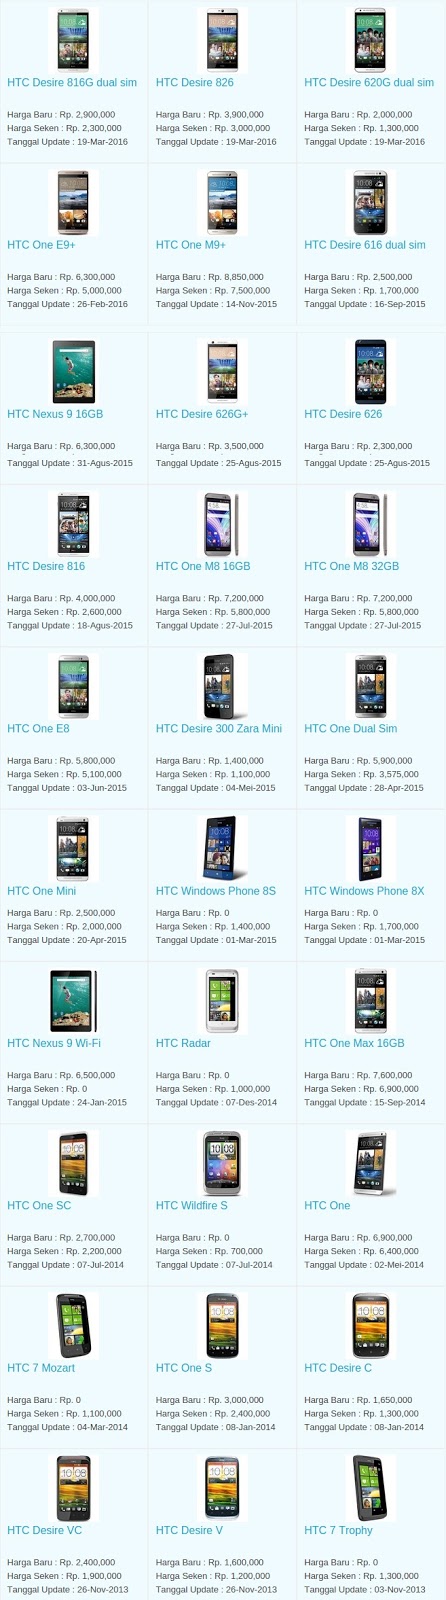 Daftar Harga Terbaru Hp HTC April 2016